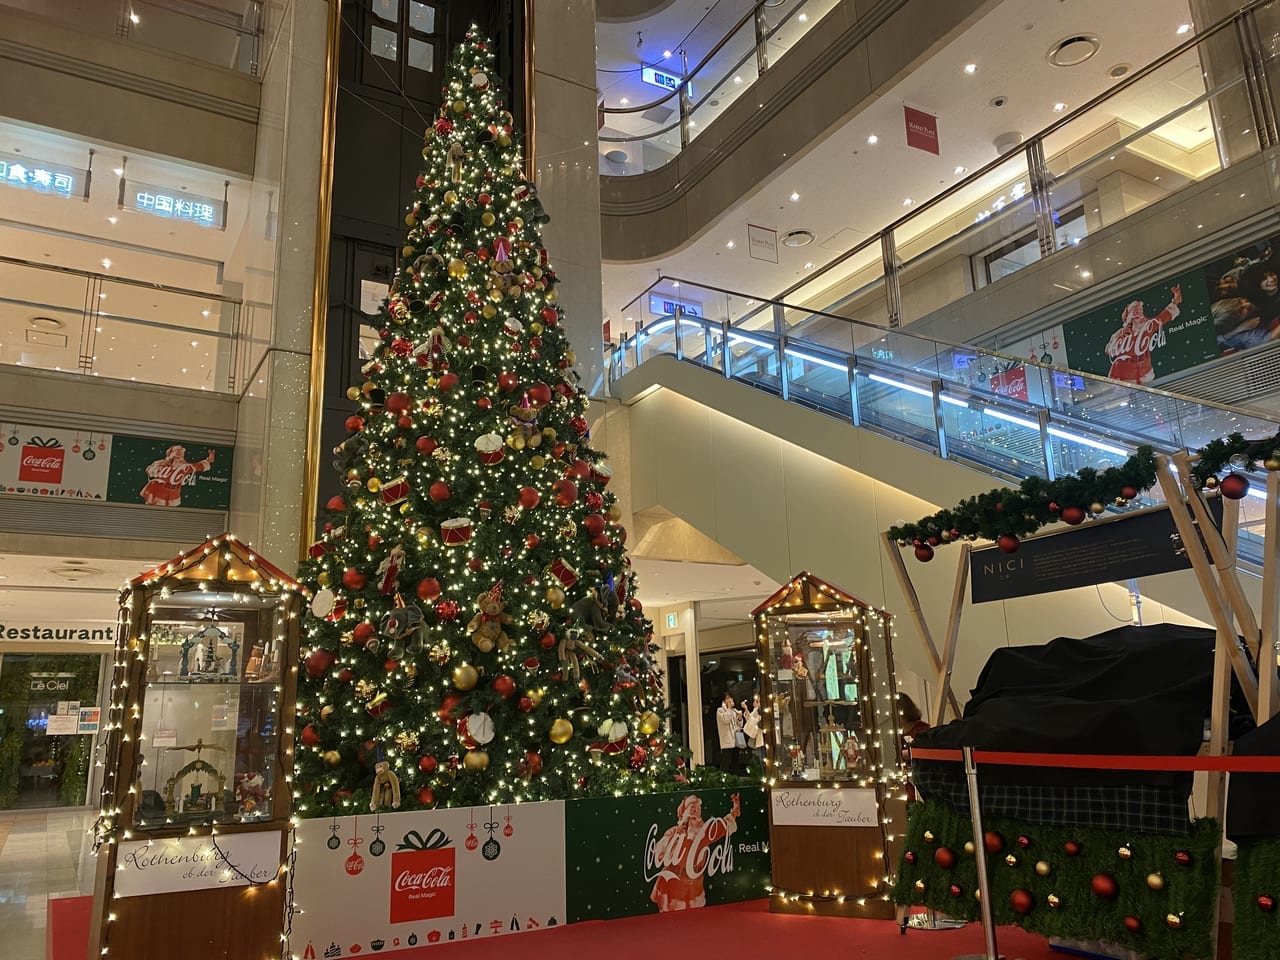 羽田空港のクリスマスツリー